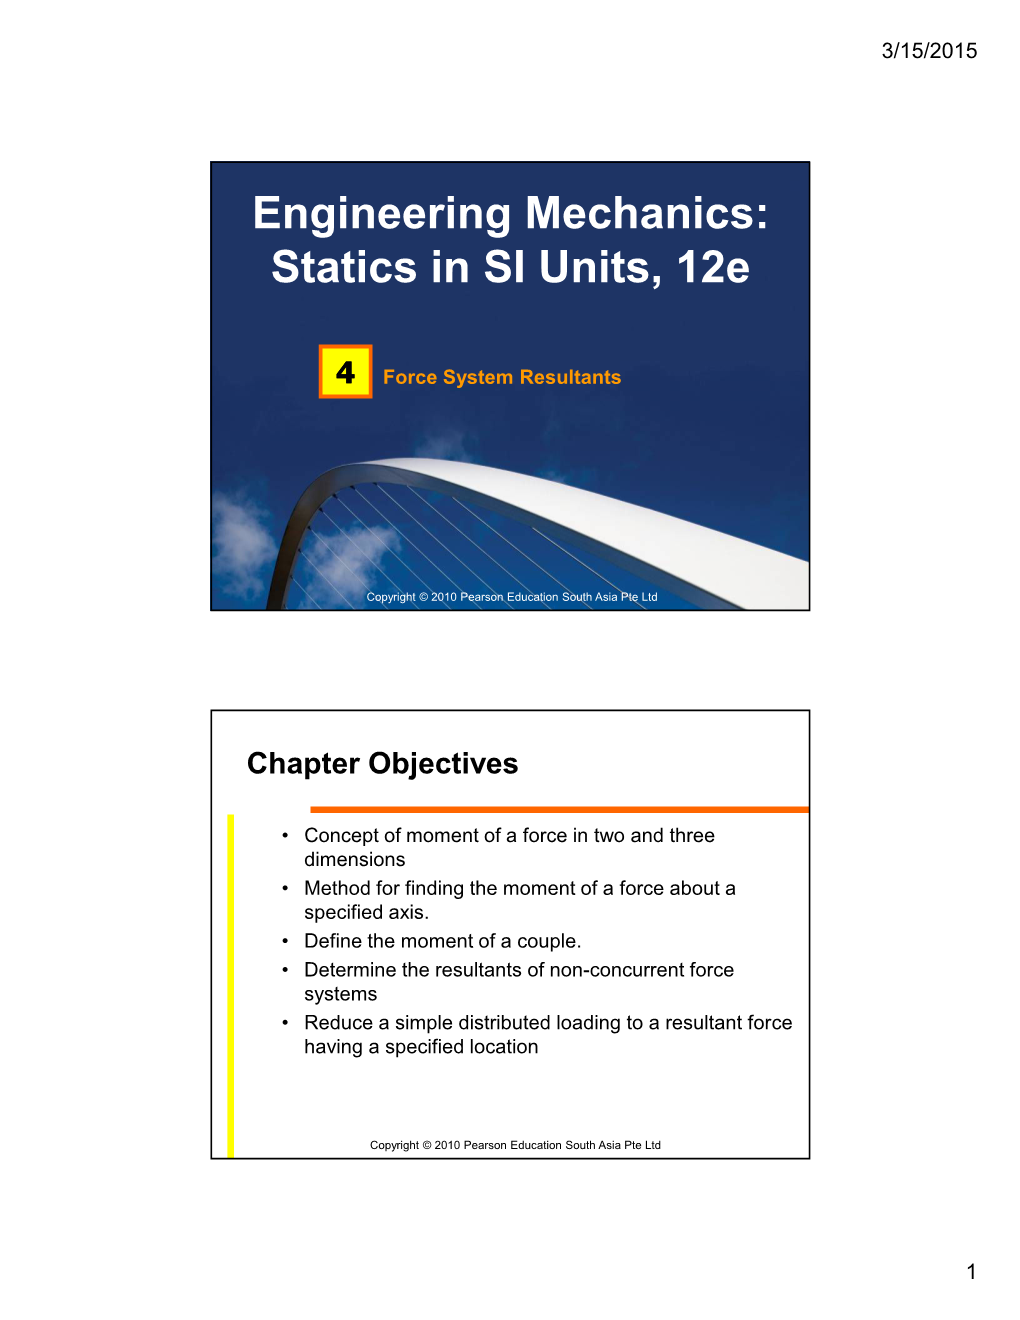 Engineering Mechanics: Statics in SI Units, 12E